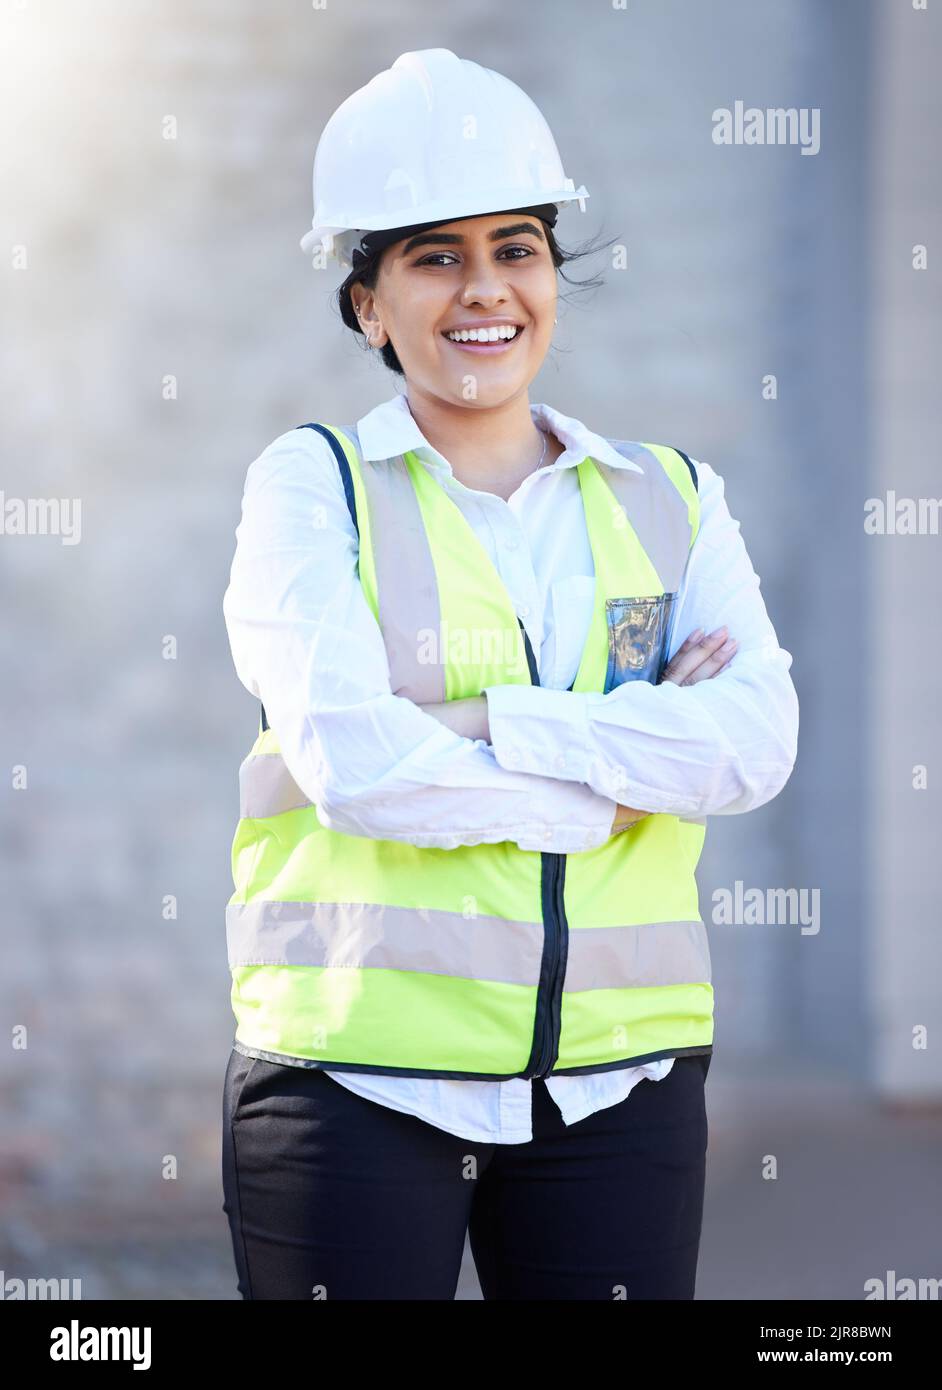 Konstruktion, Bau und Technik mit einer Frau, die eine Firma oder einen Techniker im Freien auf einer Baustelle zur Entwicklung, Renovierung oder Umgestaltung hat Stockfoto